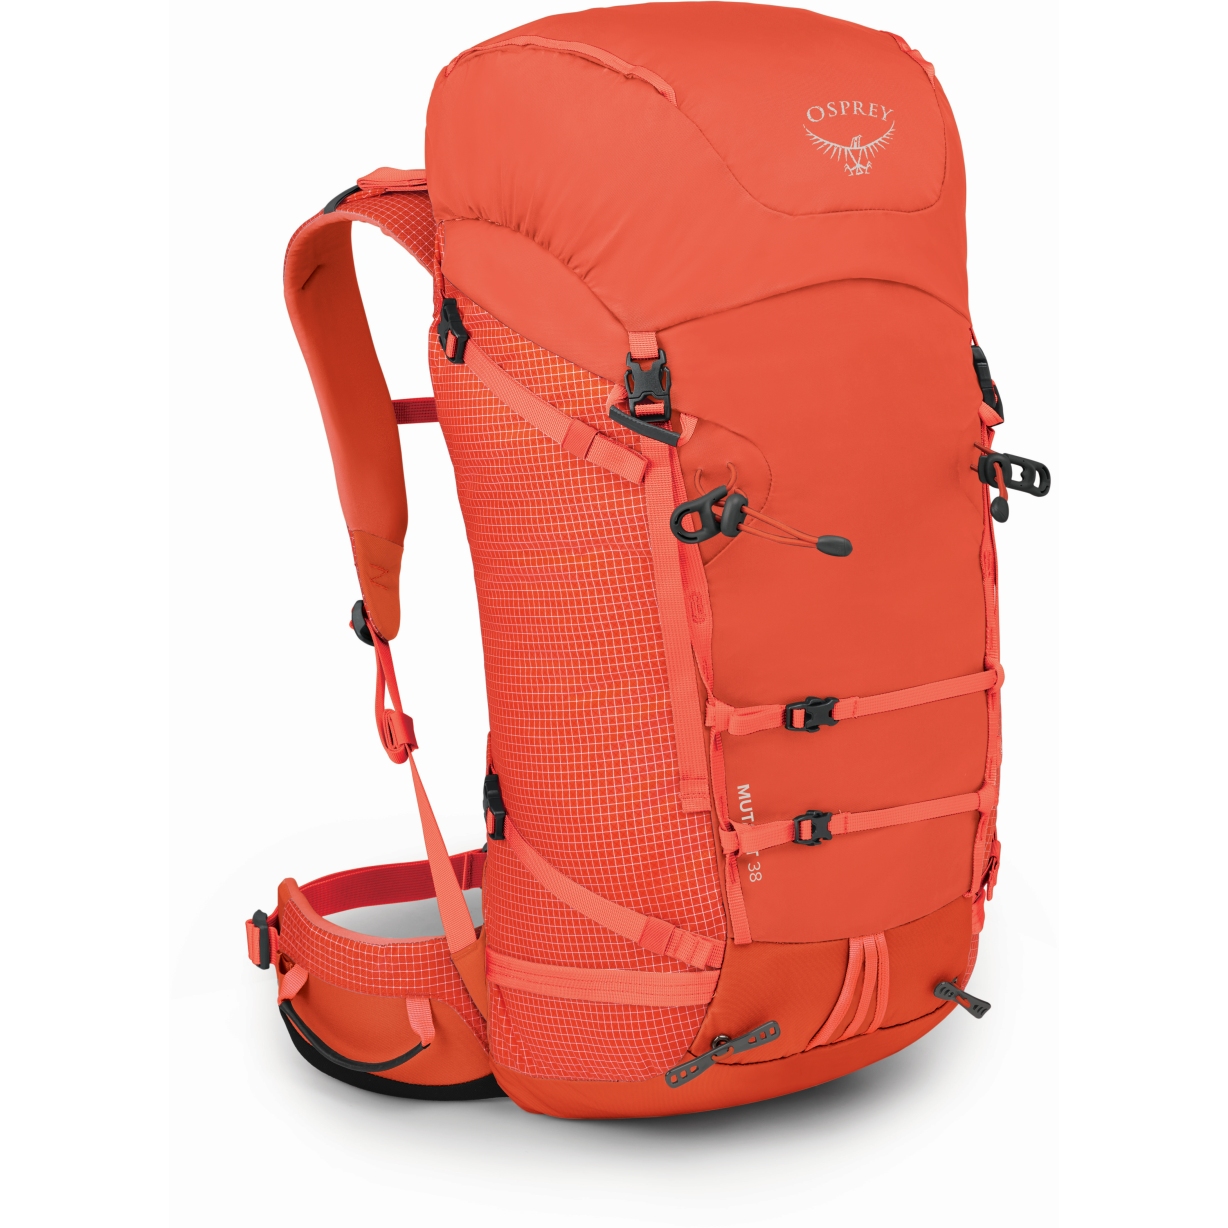 Productfoto van Osprey Mutant 38 Backpack - Mars Orange - S/M